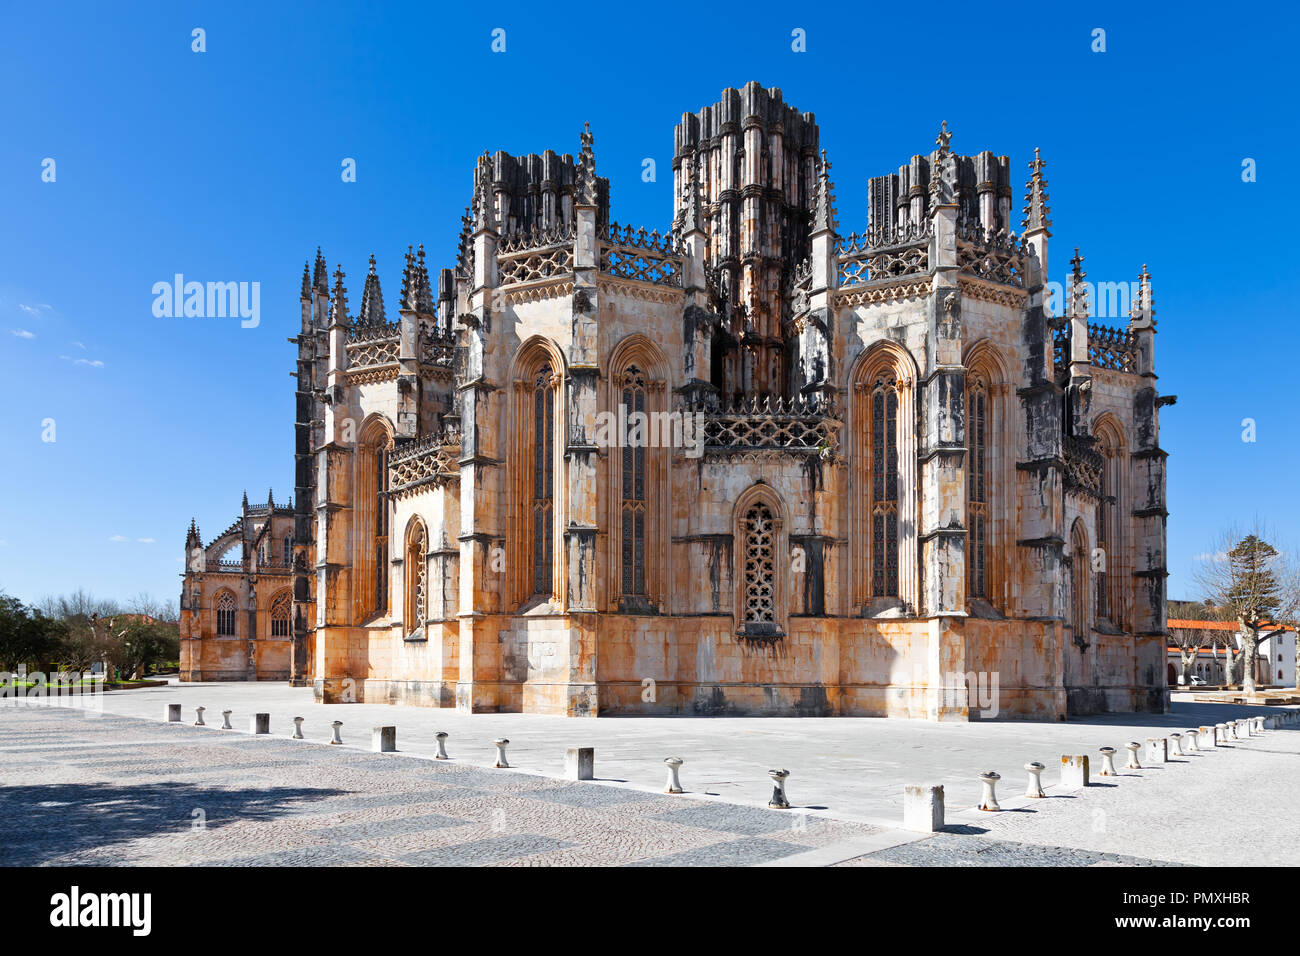 Batalha, Portugal. Kloster von Batalha aka Kloster Santa Maria da Vitoria. Blick auf die capelas Imperfeitas (unvollendete Kapellen). Gothic Stockfoto